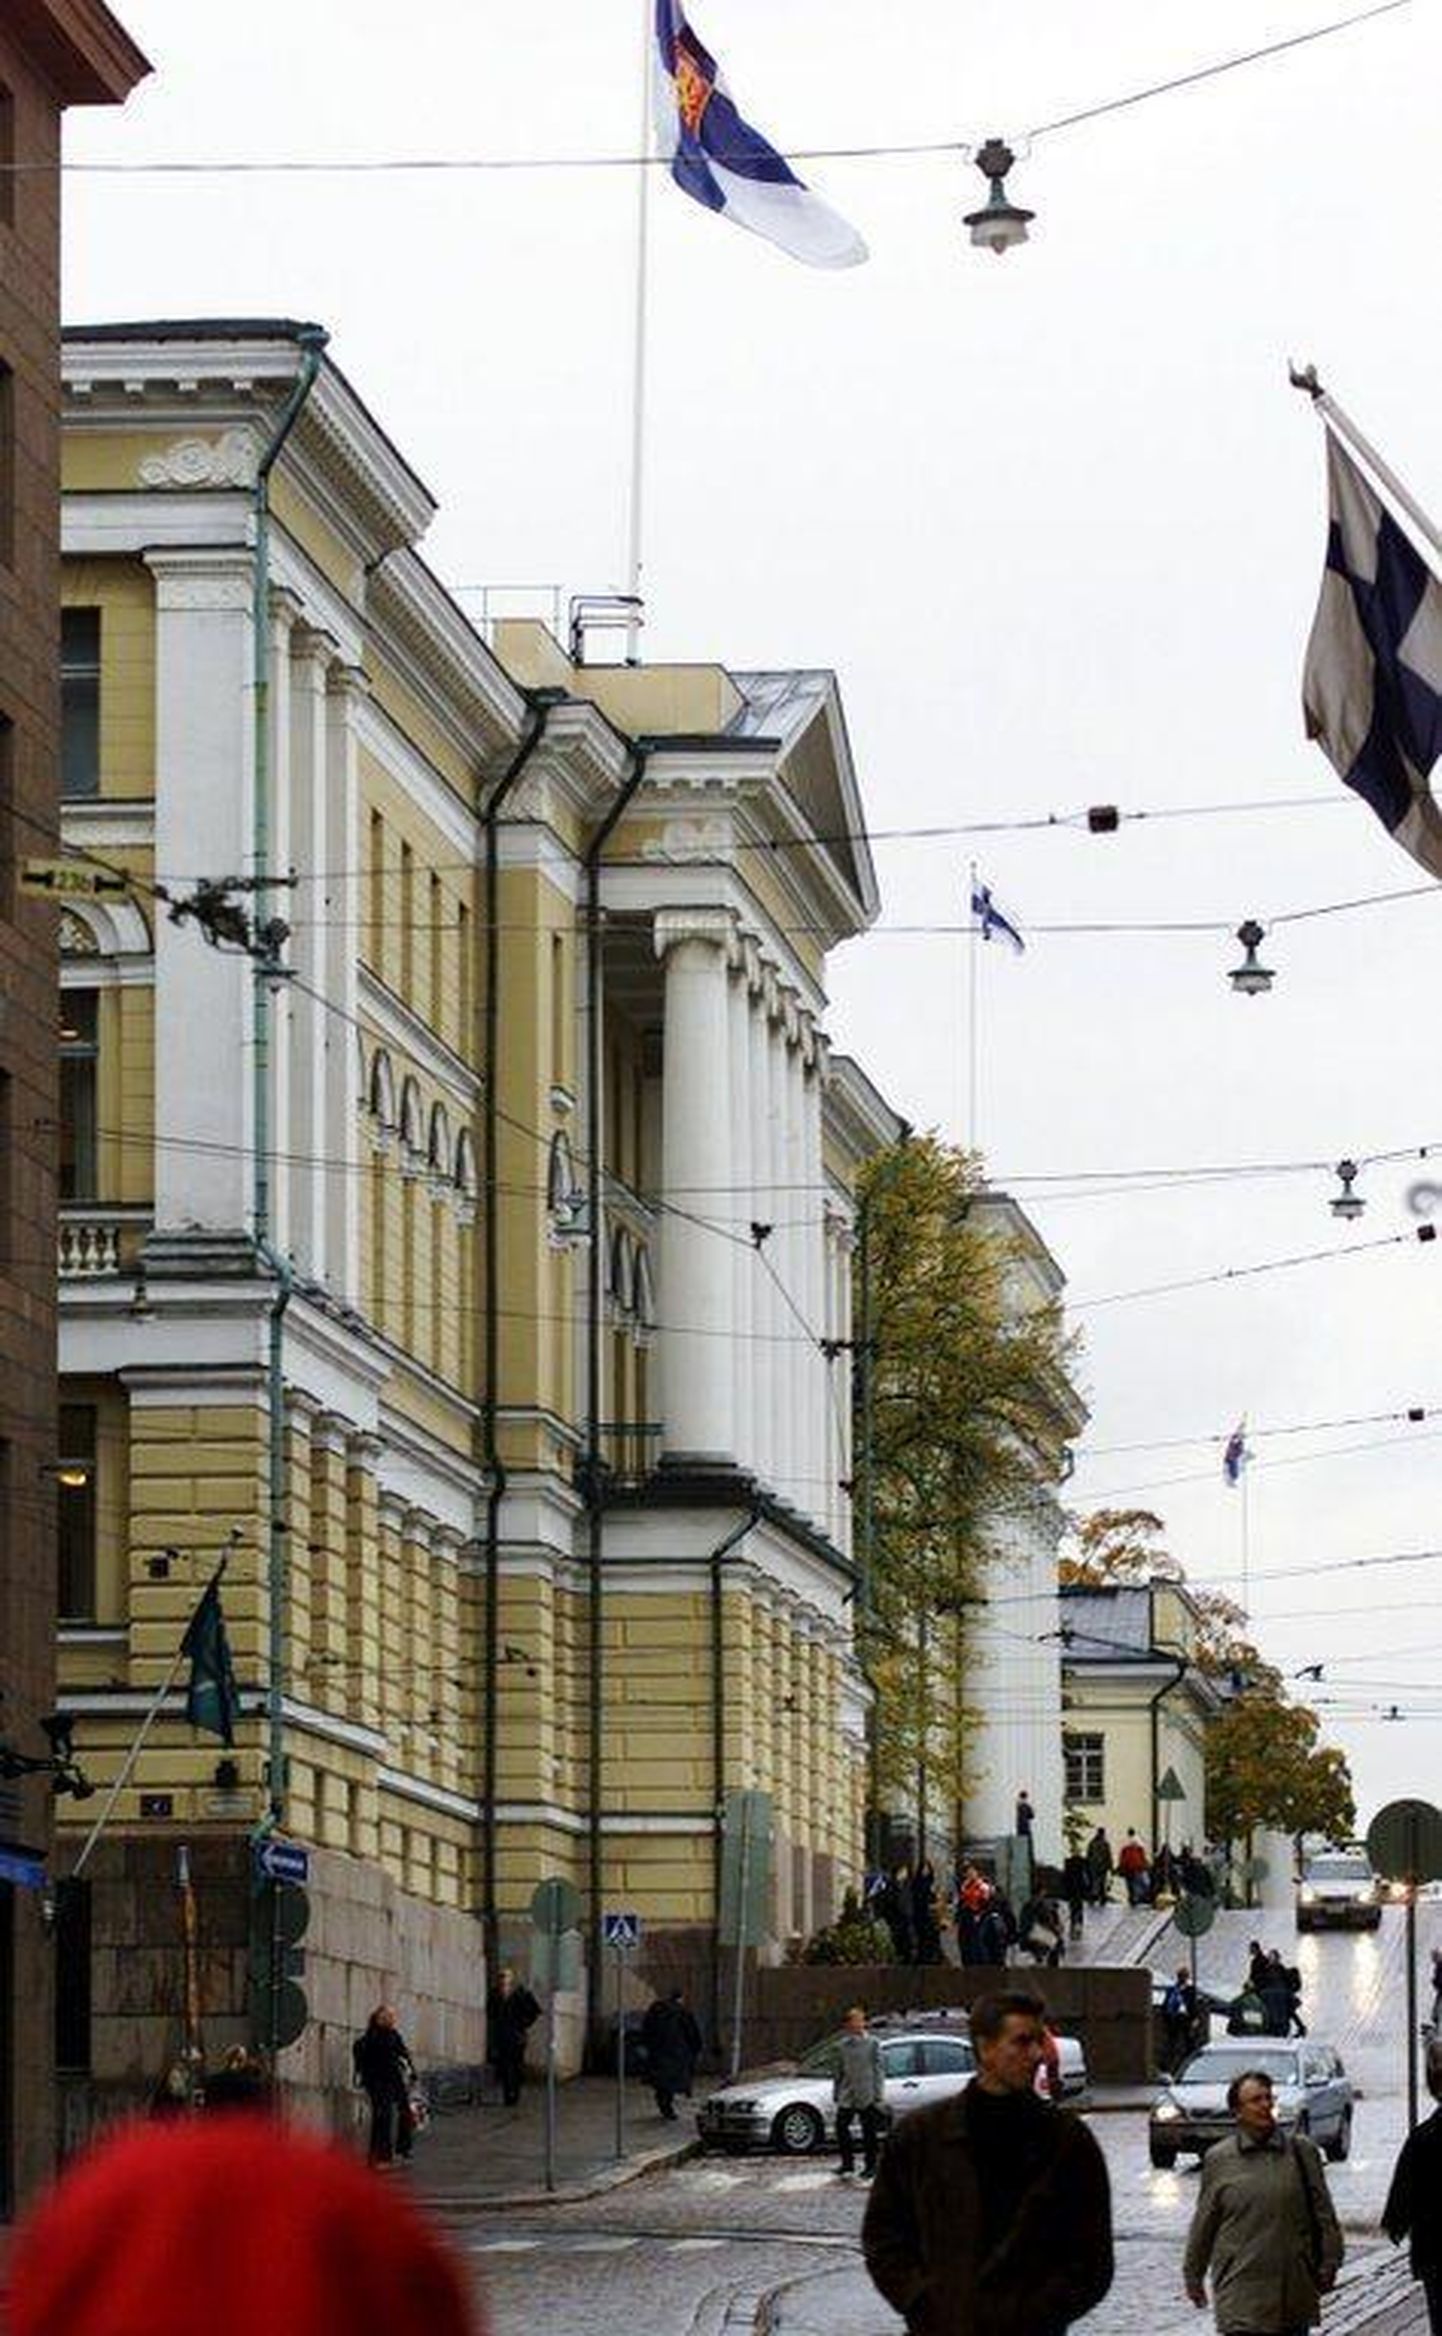 Helsingi ülikool loodab koos teiste Soome ülikoolidega sügisest rohkem kontaktõpet läbi viia